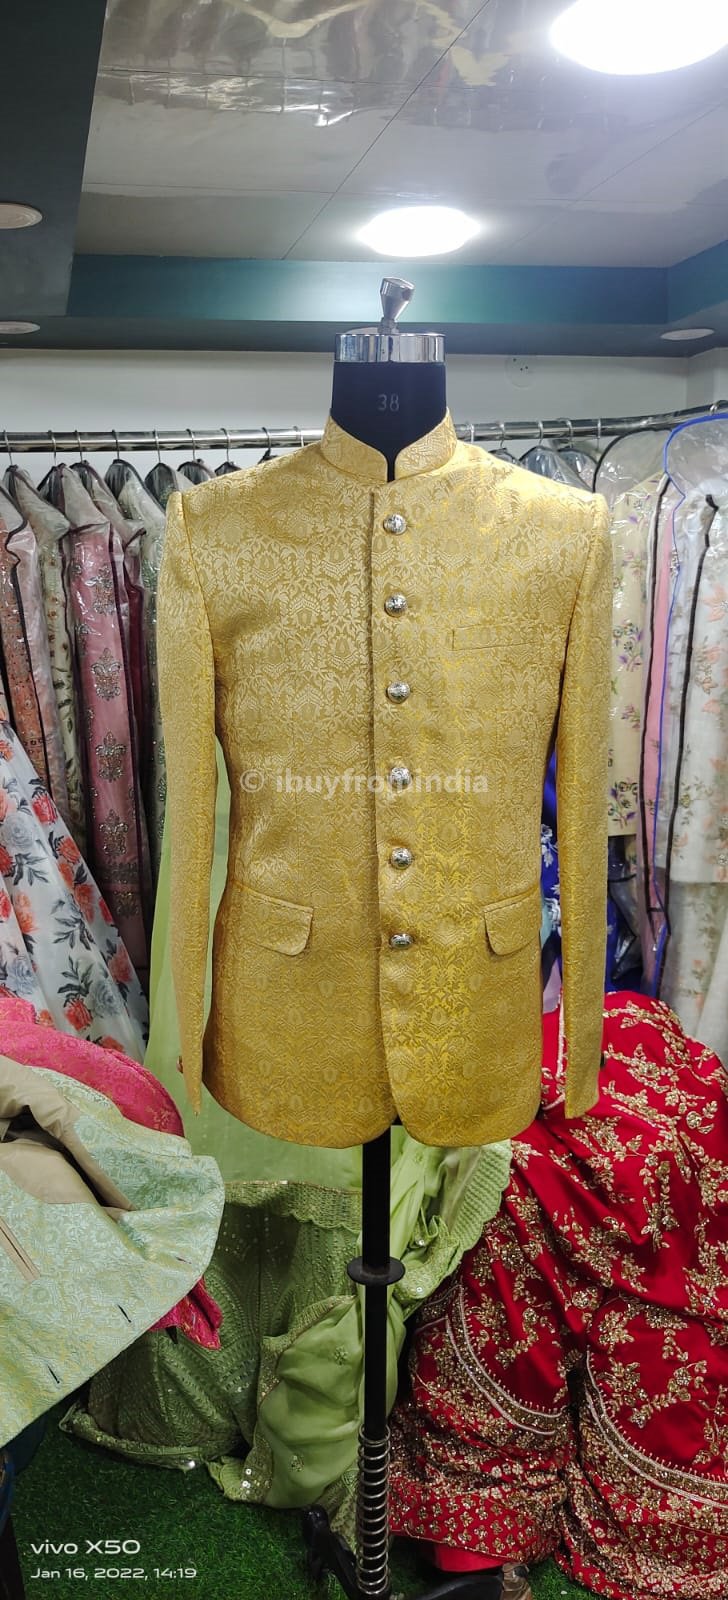 jodhpuri suit for men wedding